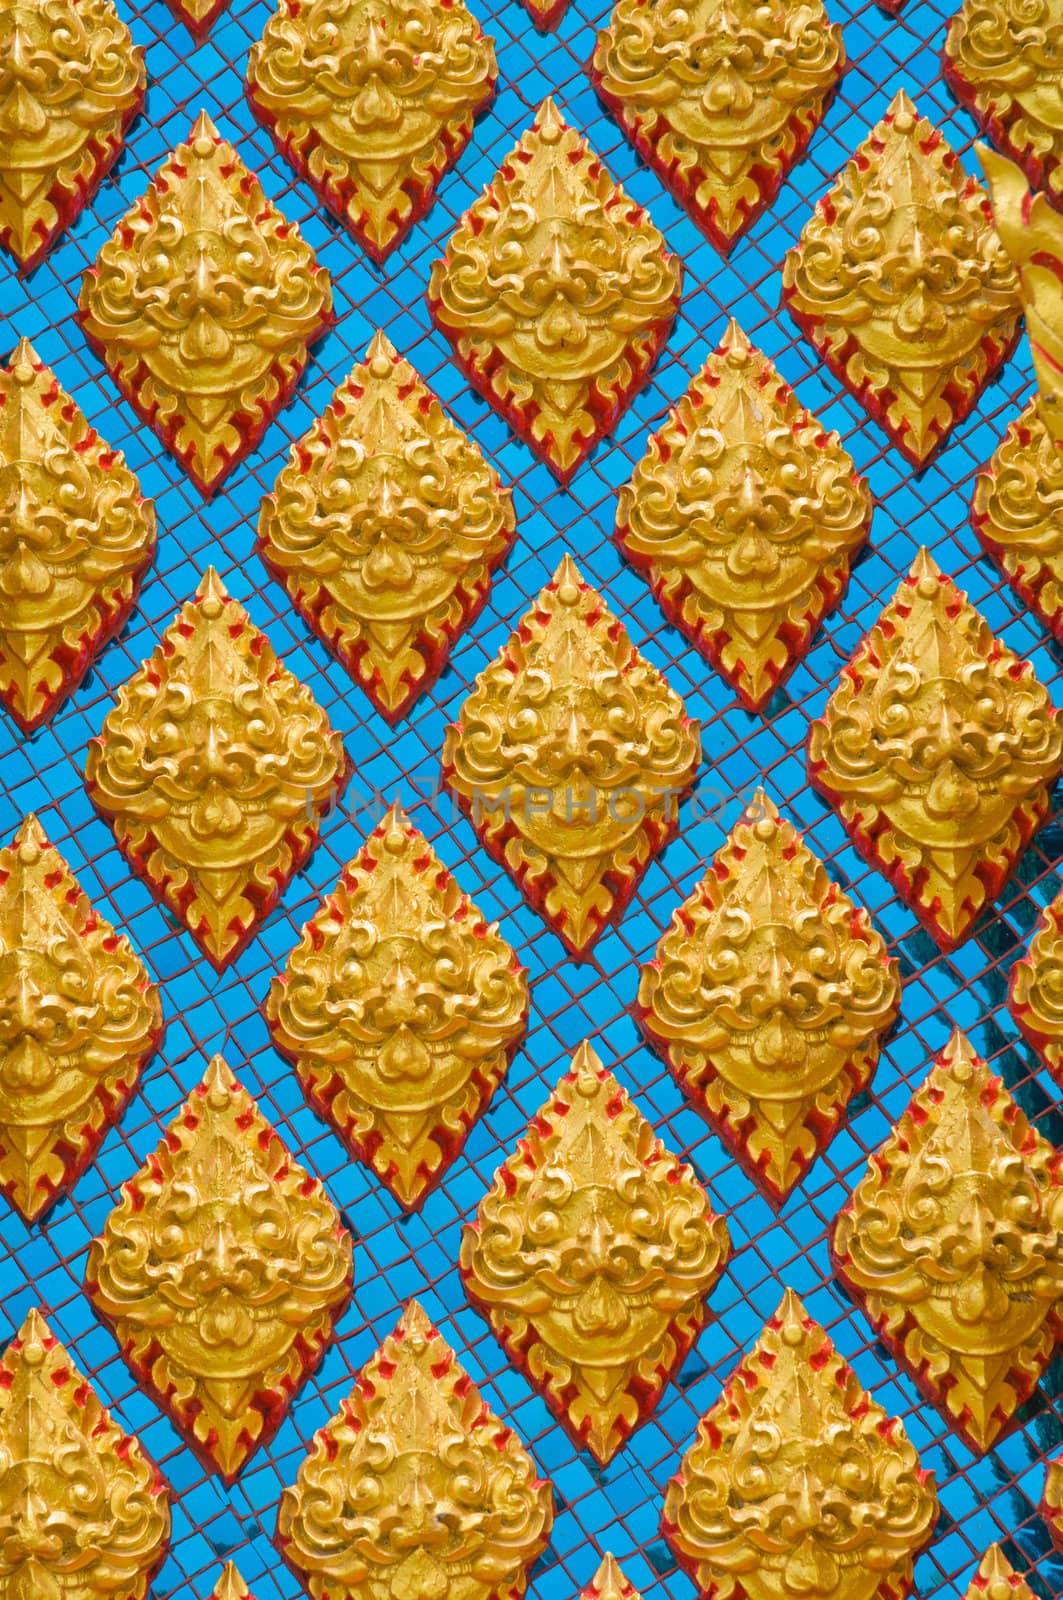 pattern on wall by antpkr